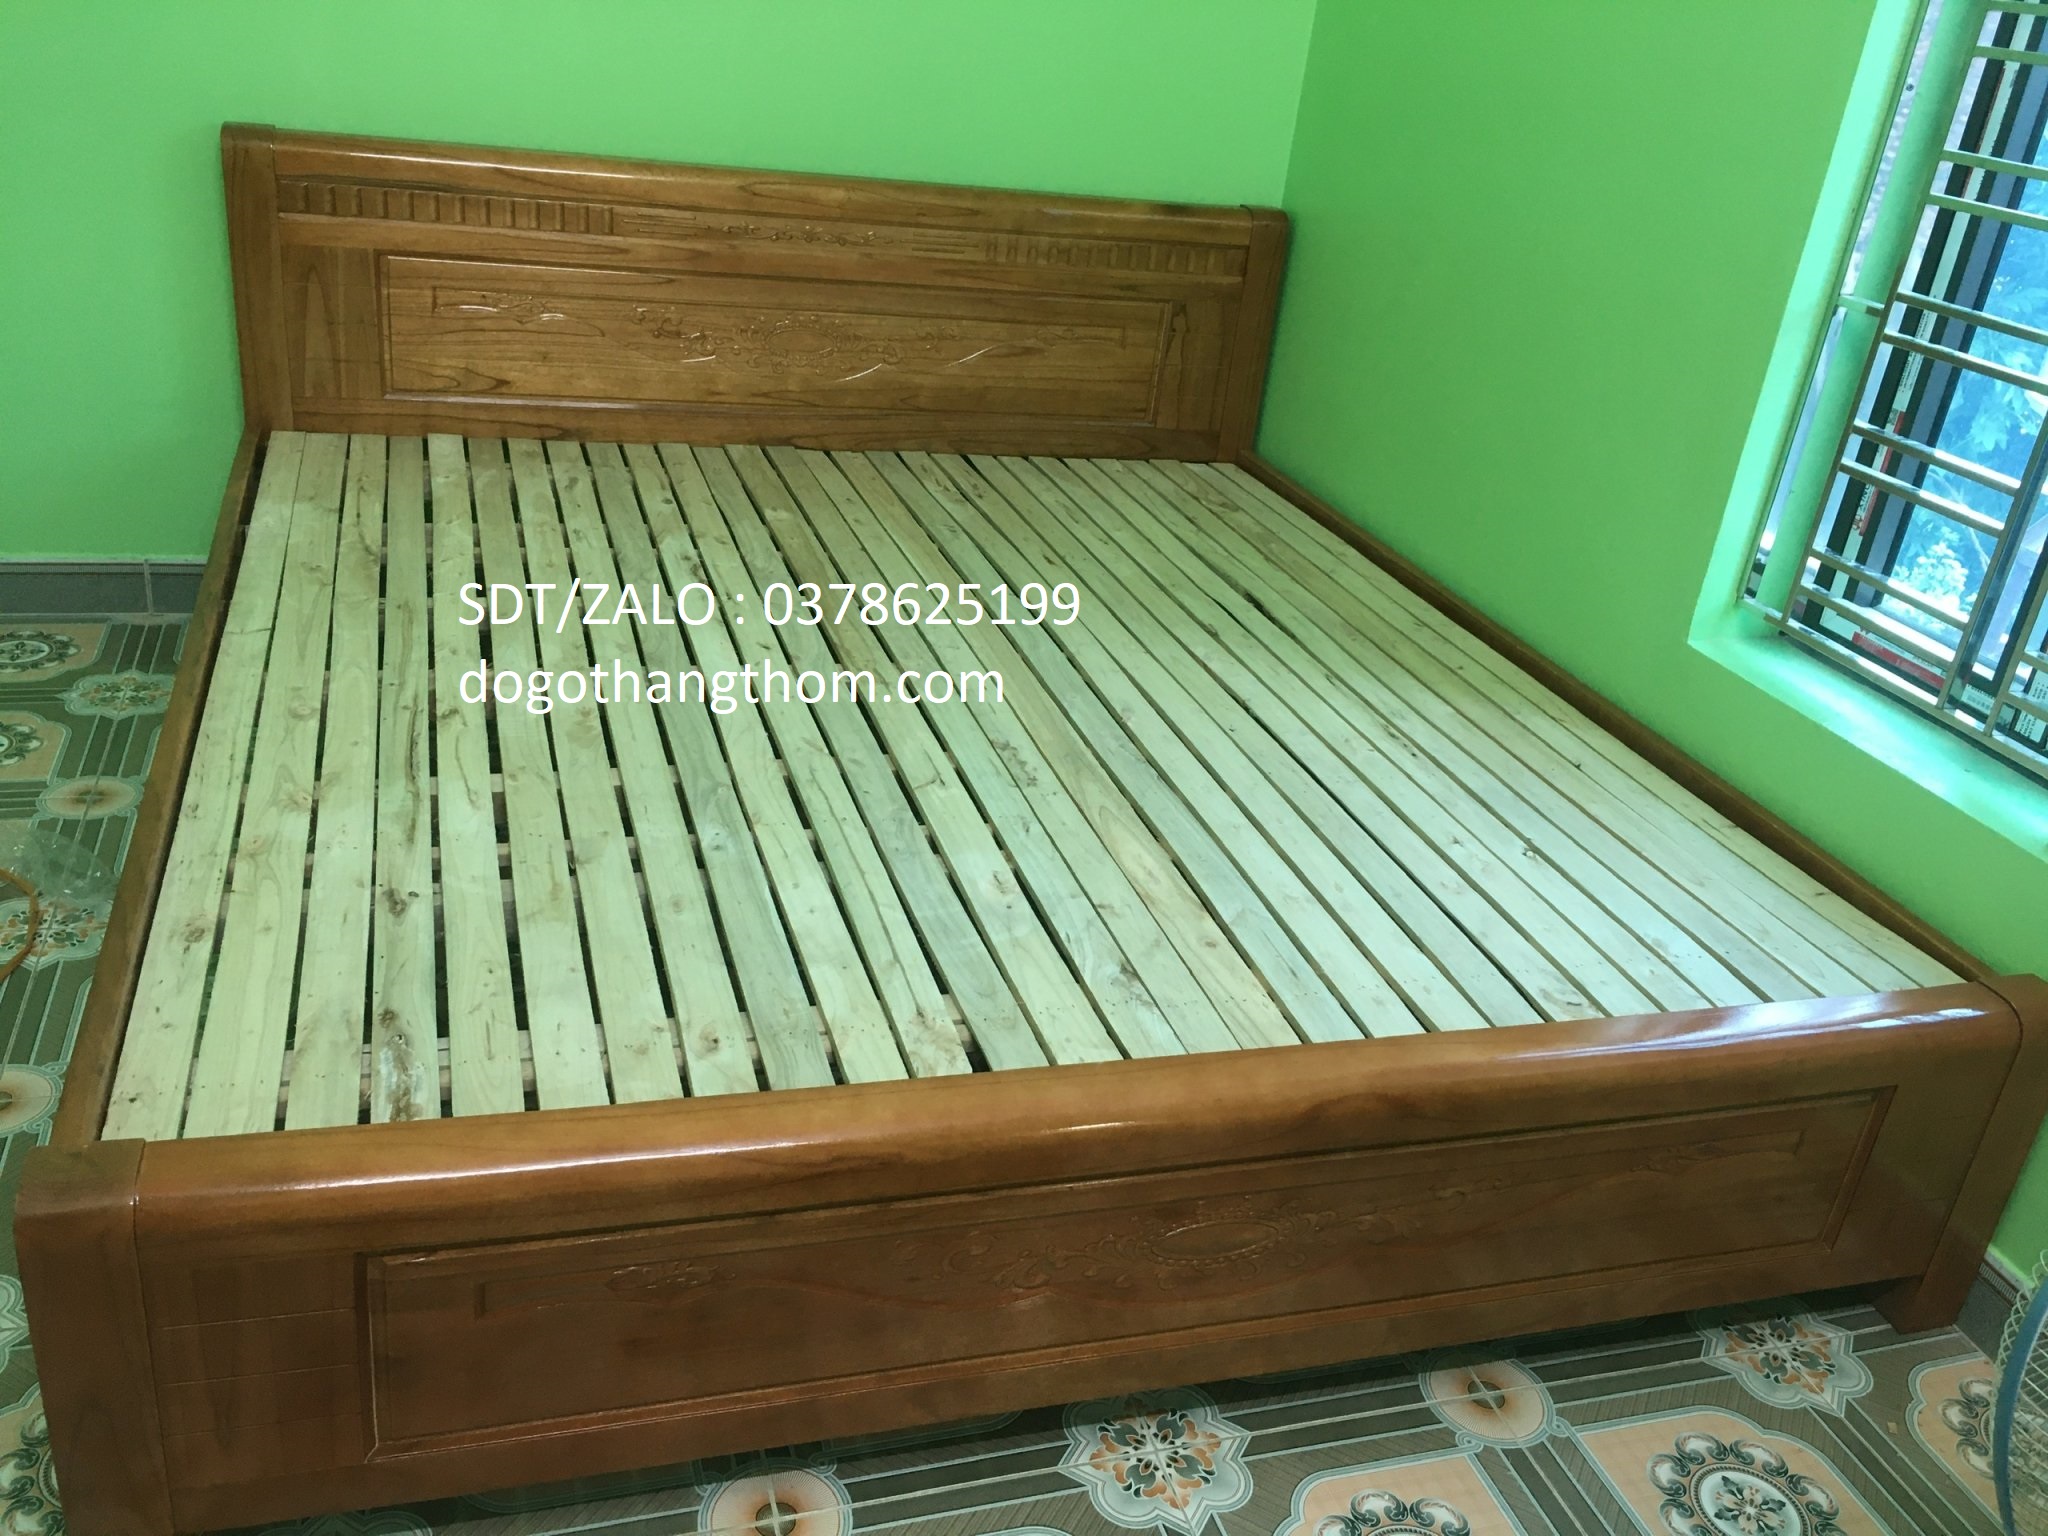 giường ngủ gỗ xoan đào phòng ngủ